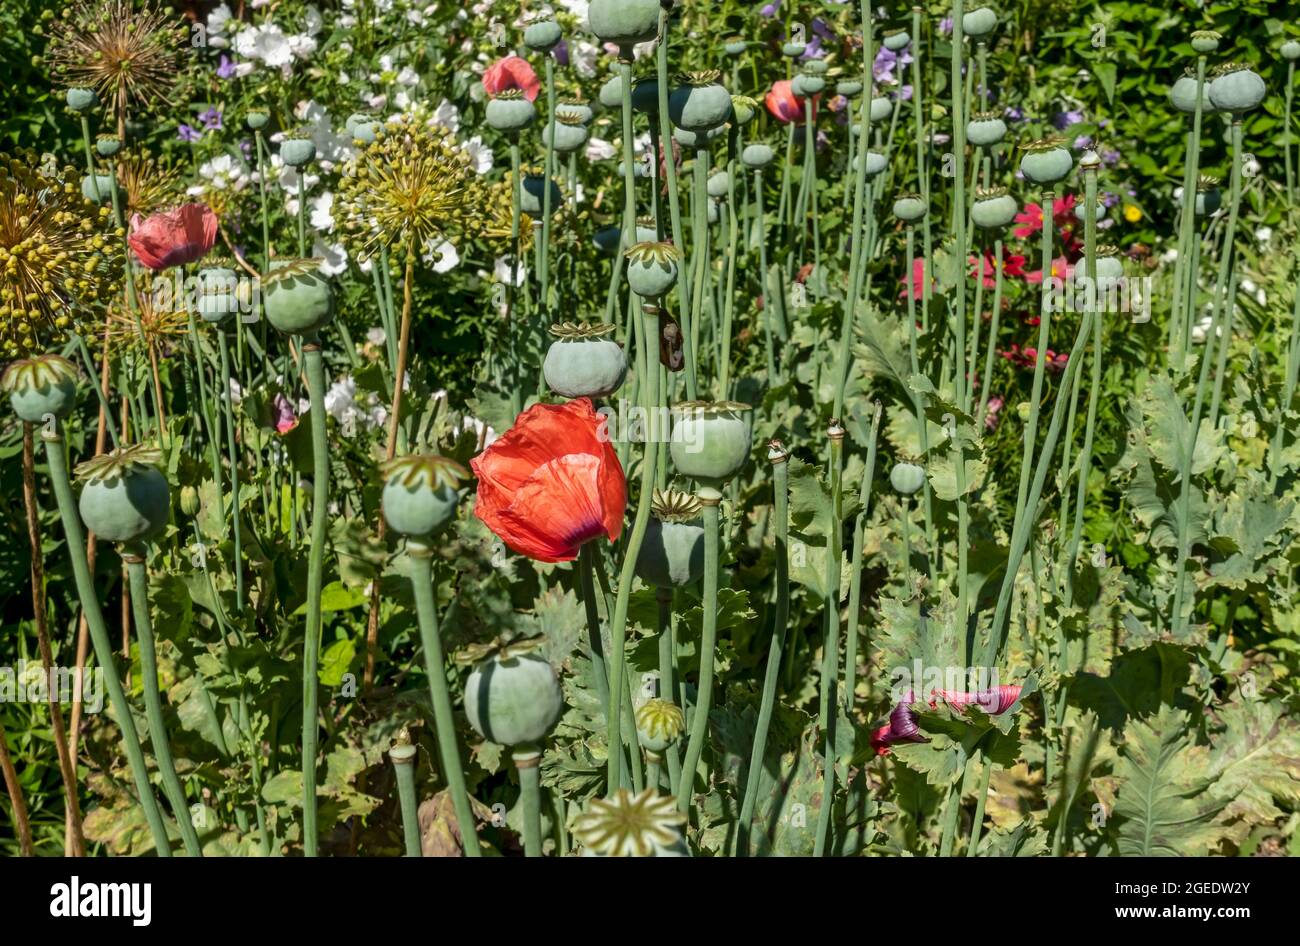 Gros plan des têtes de pépins de pavot fleurs de coquelicots dans une frontière de jardin en été Angleterre Royaume-Uni Grande-Bretagne Grande-Bretagne Banque D'Images